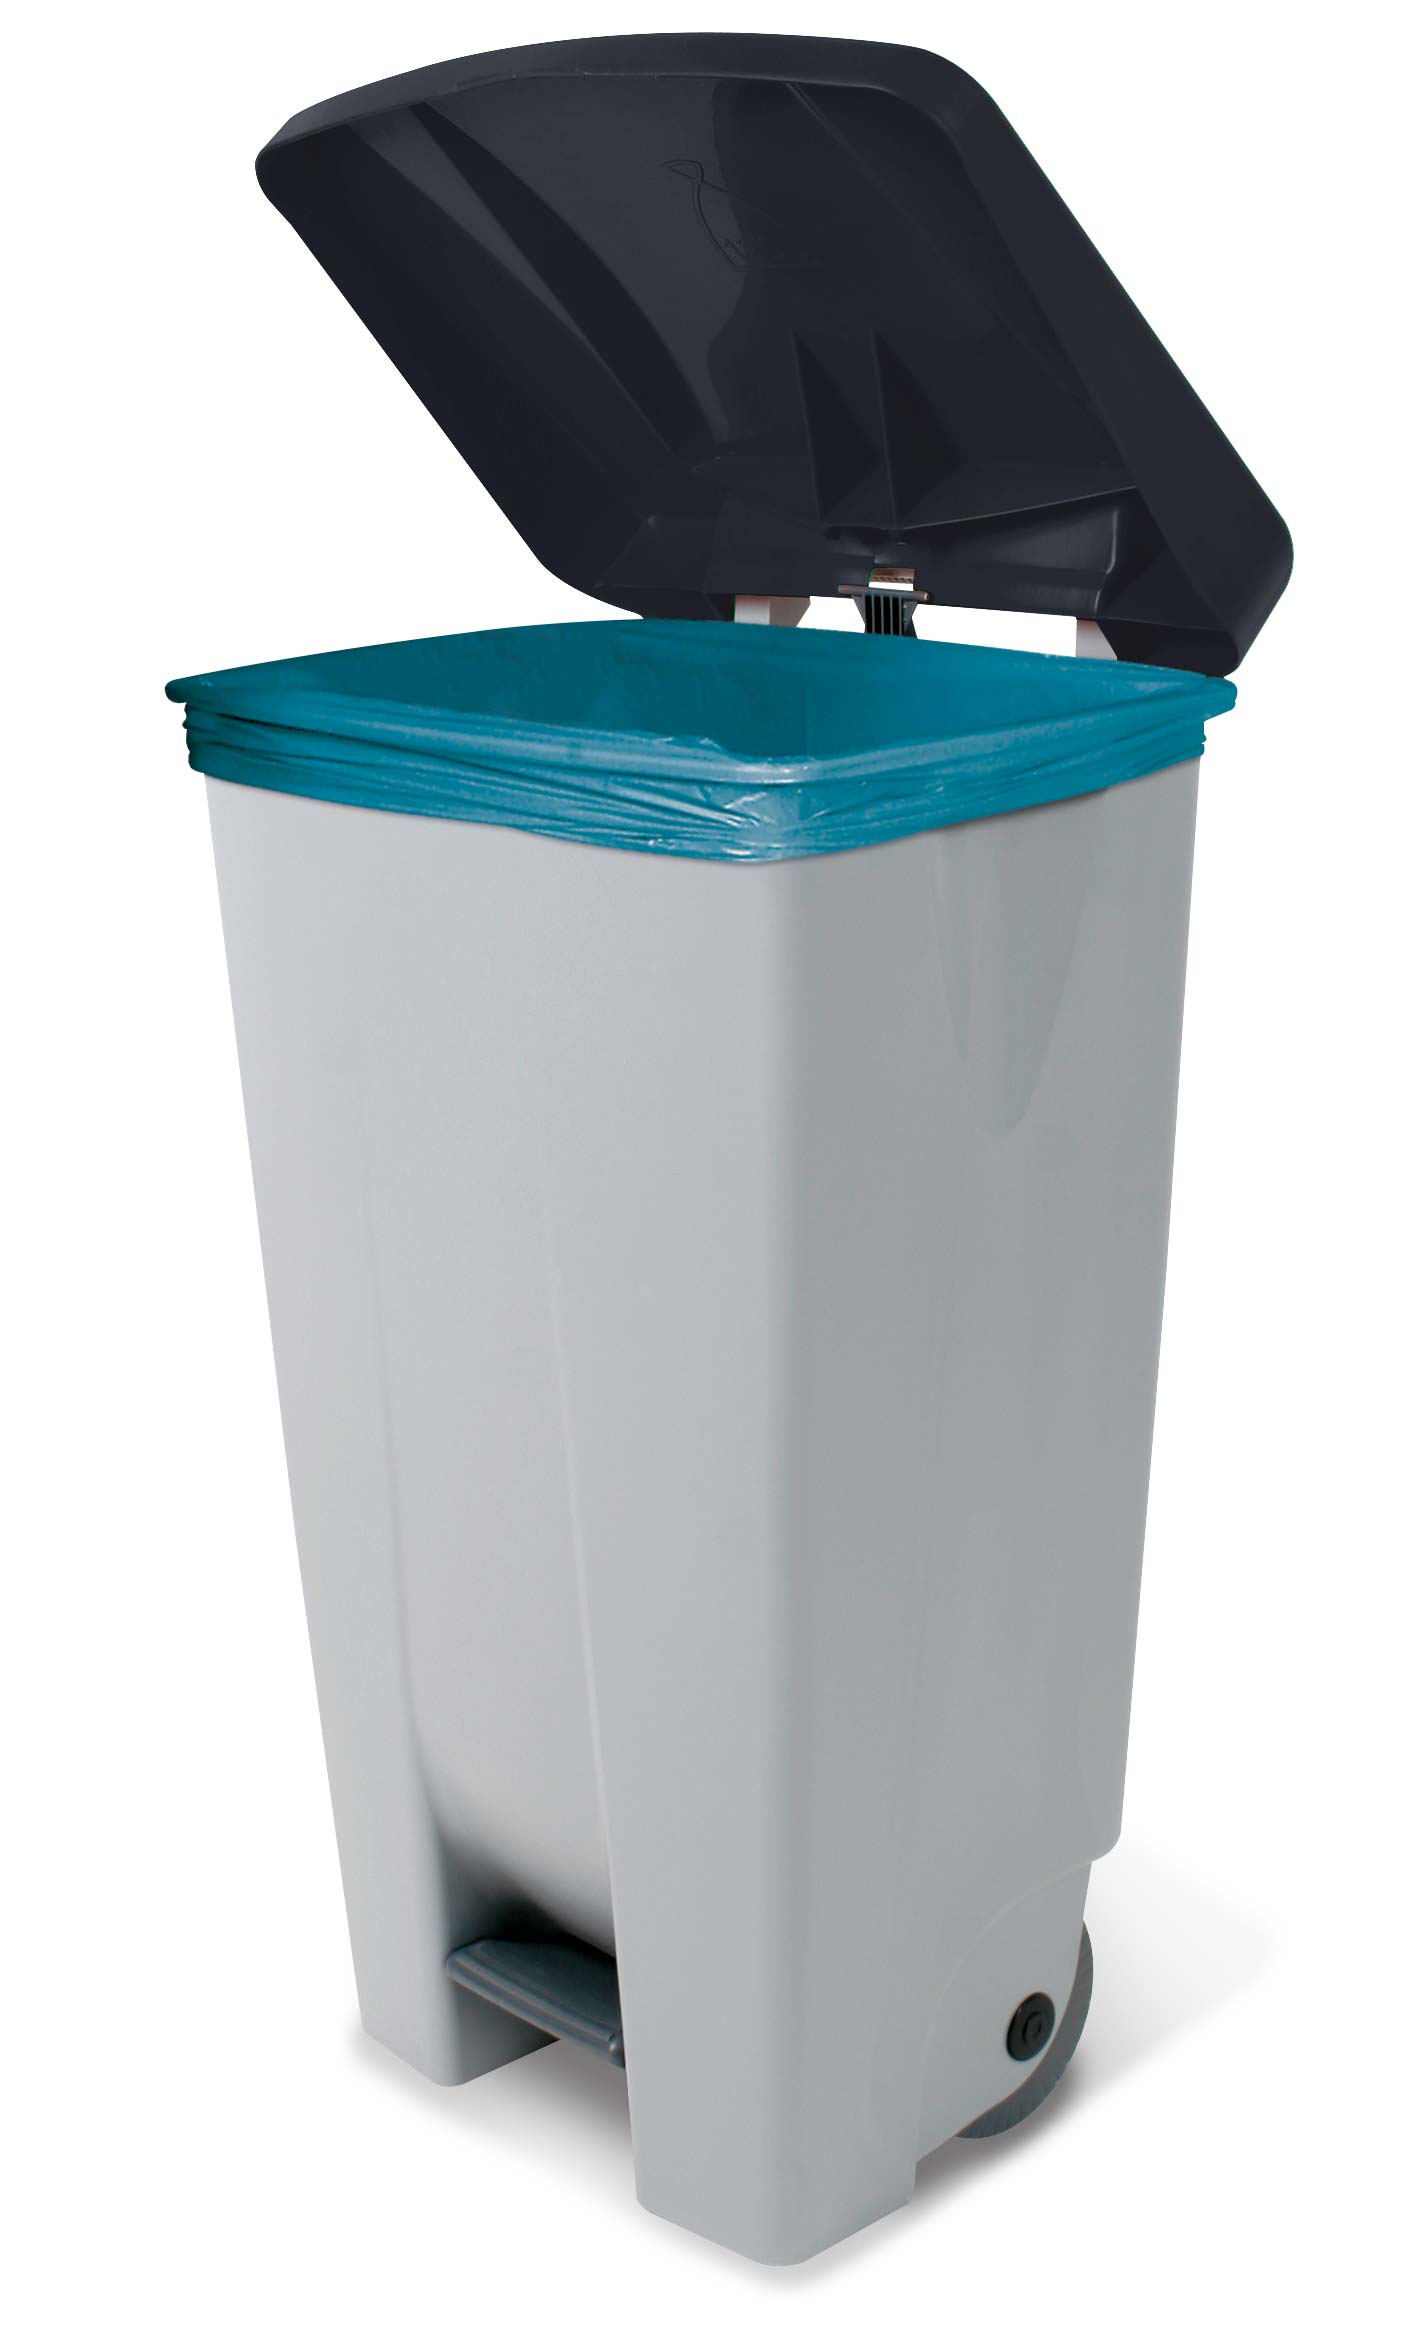 Tret-Abfallbehälter mit Rollen, PP, BxTxH 510x430x880 mm, 120 Liter, grau/schwarz